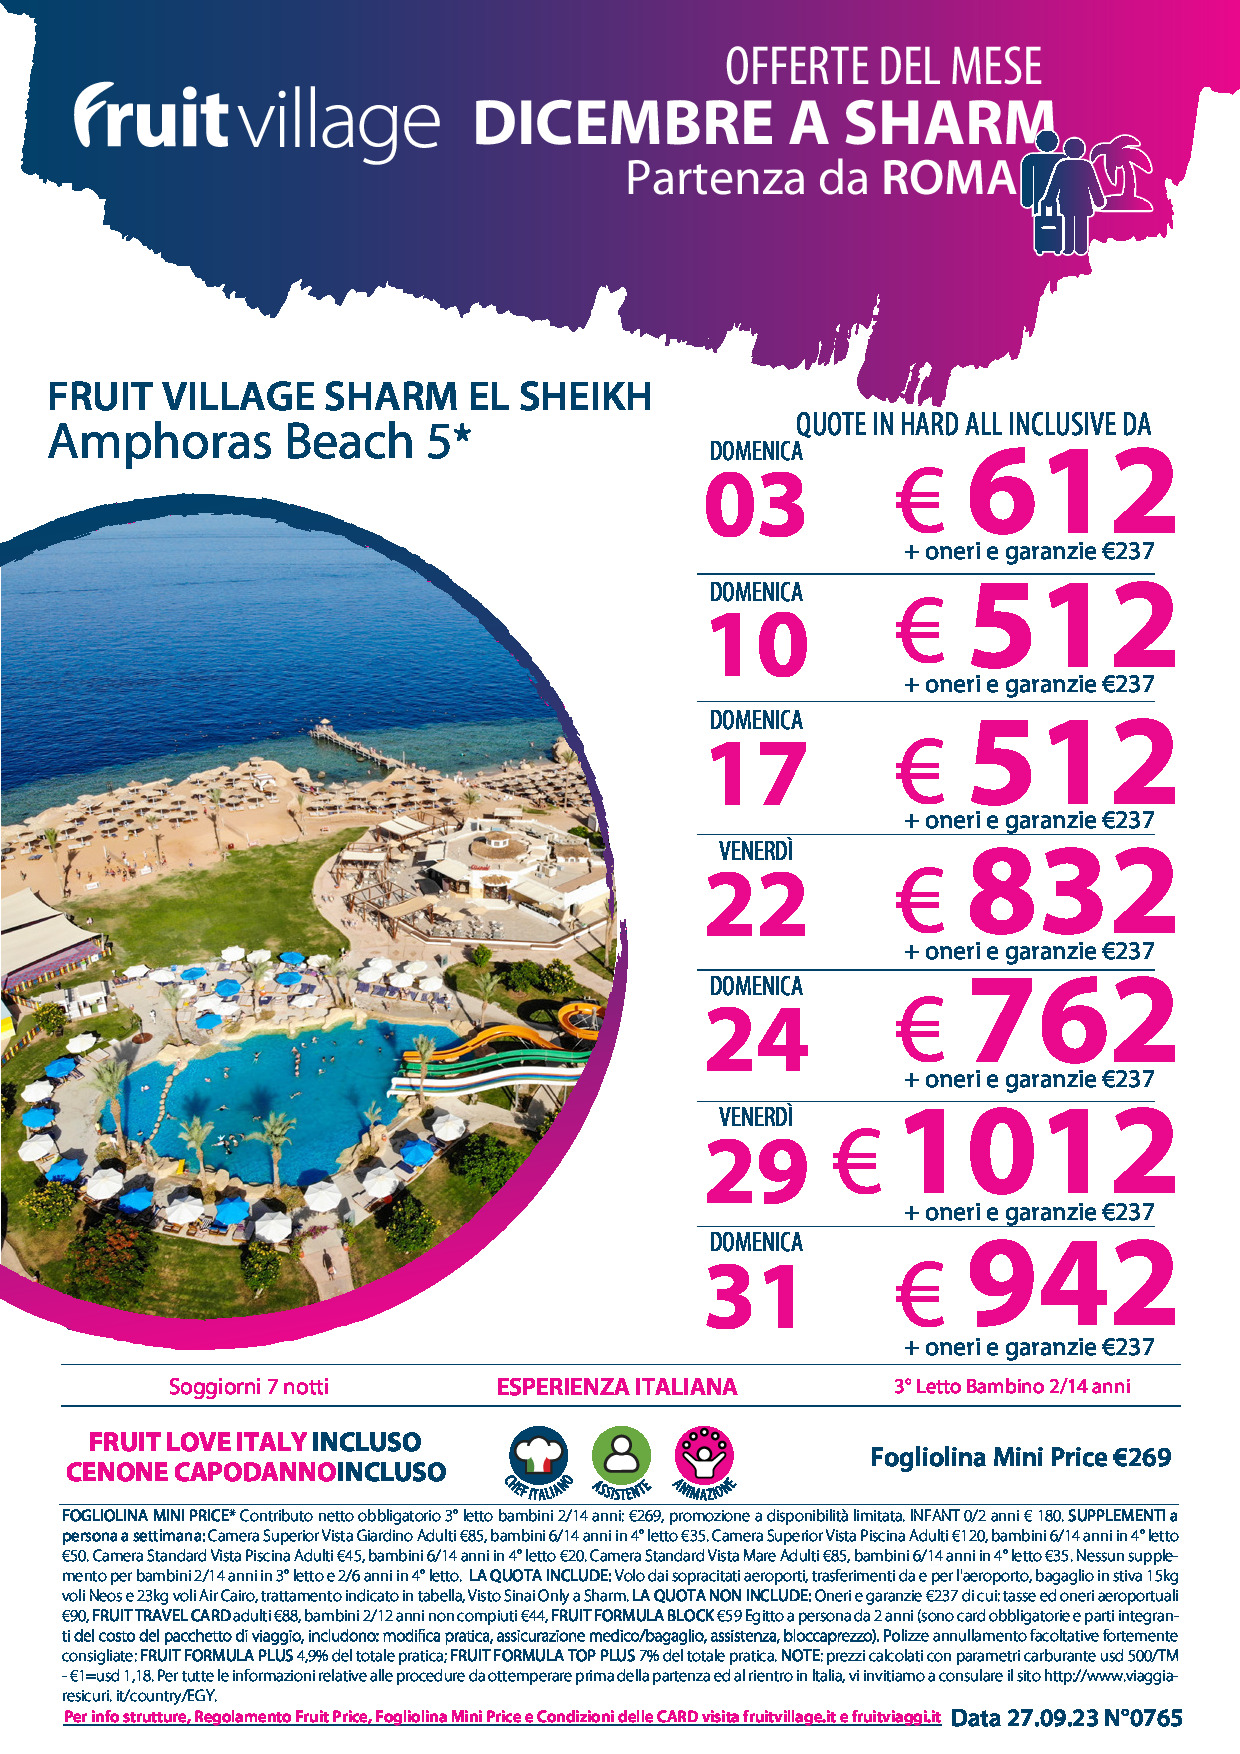 FRUIT VILLAGE Sharm El Sheikh Amphoras Beach - da Roma a Dicembre